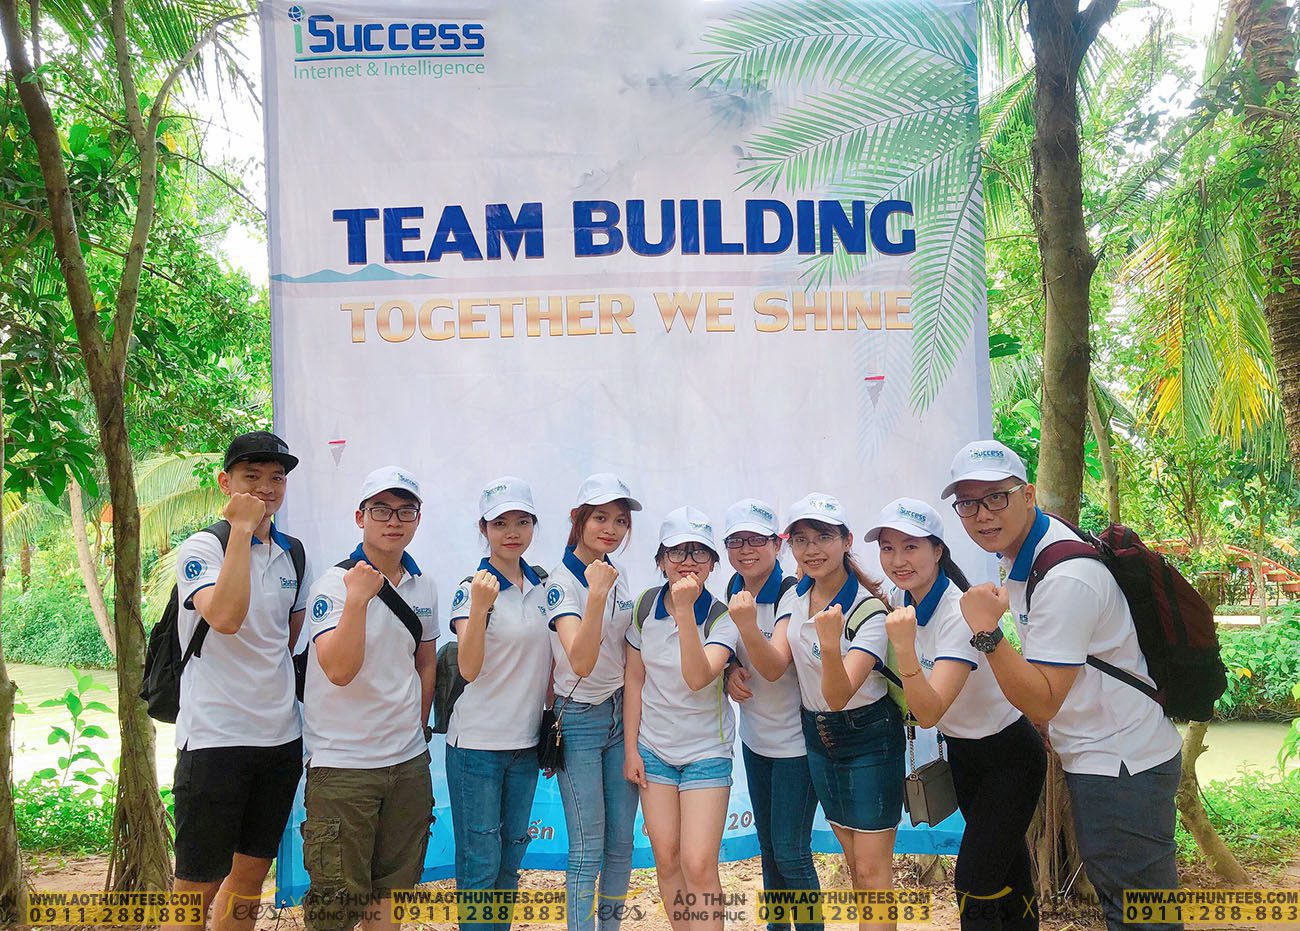 Công ty TNHH iSUCCESS tổ chức team building với mẫu áo thun đồng phục của TEES - TNHH ISUCCESS 7529643e818564db3d94